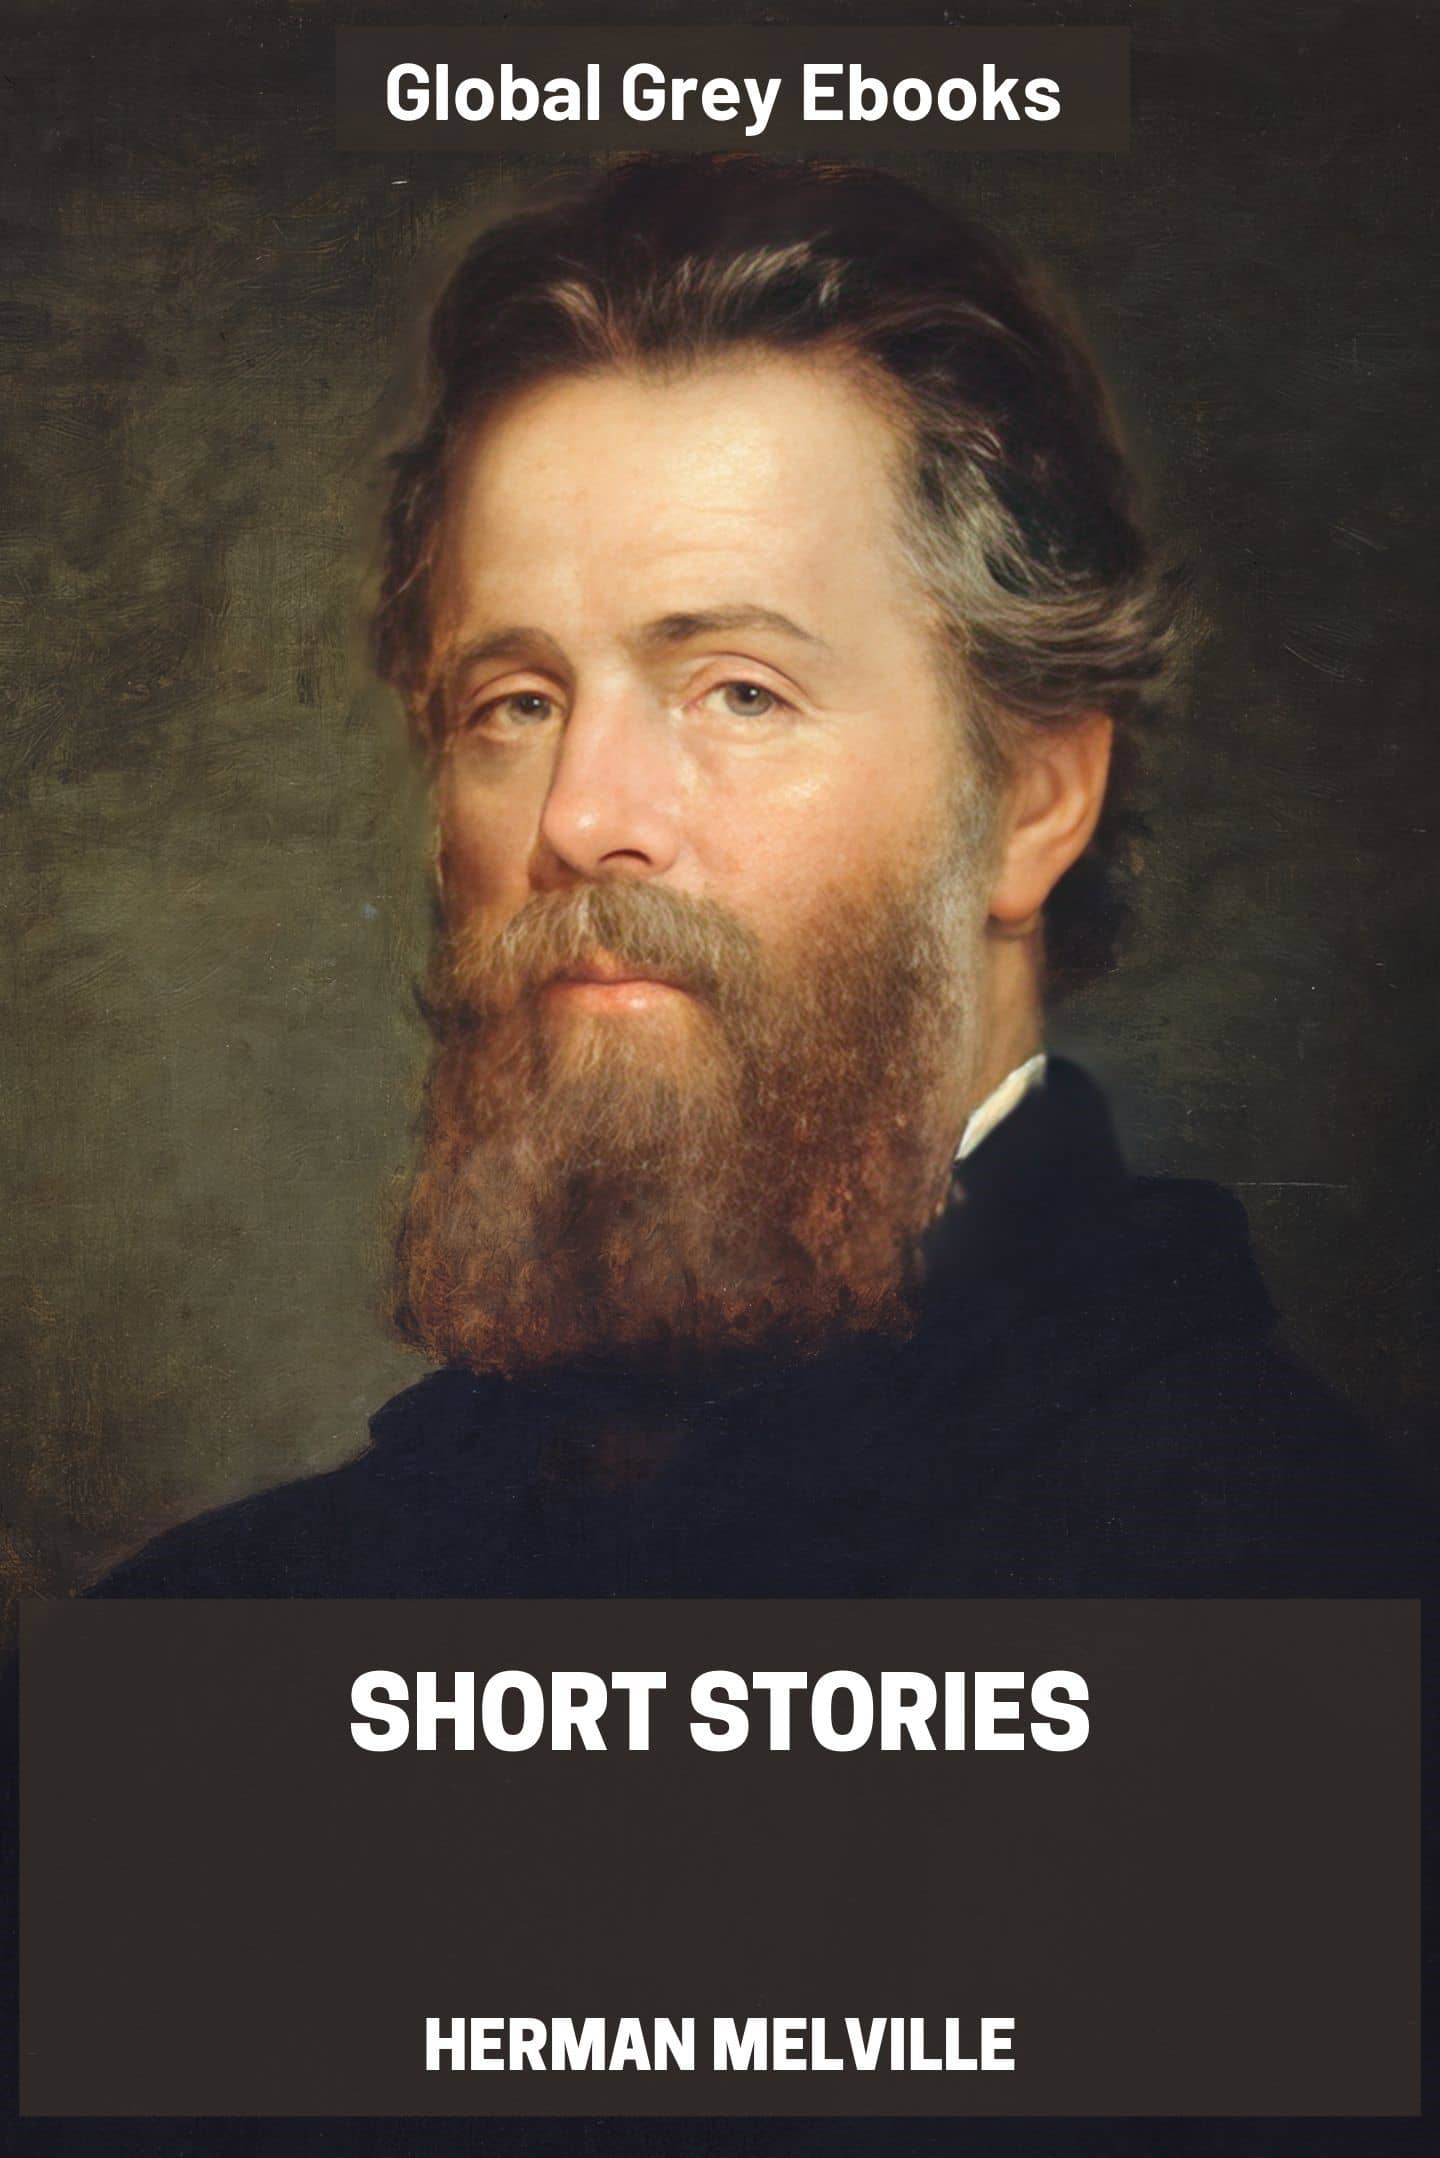 Short Stories by Herman Melville - Free ebook - Global Grey ebooks